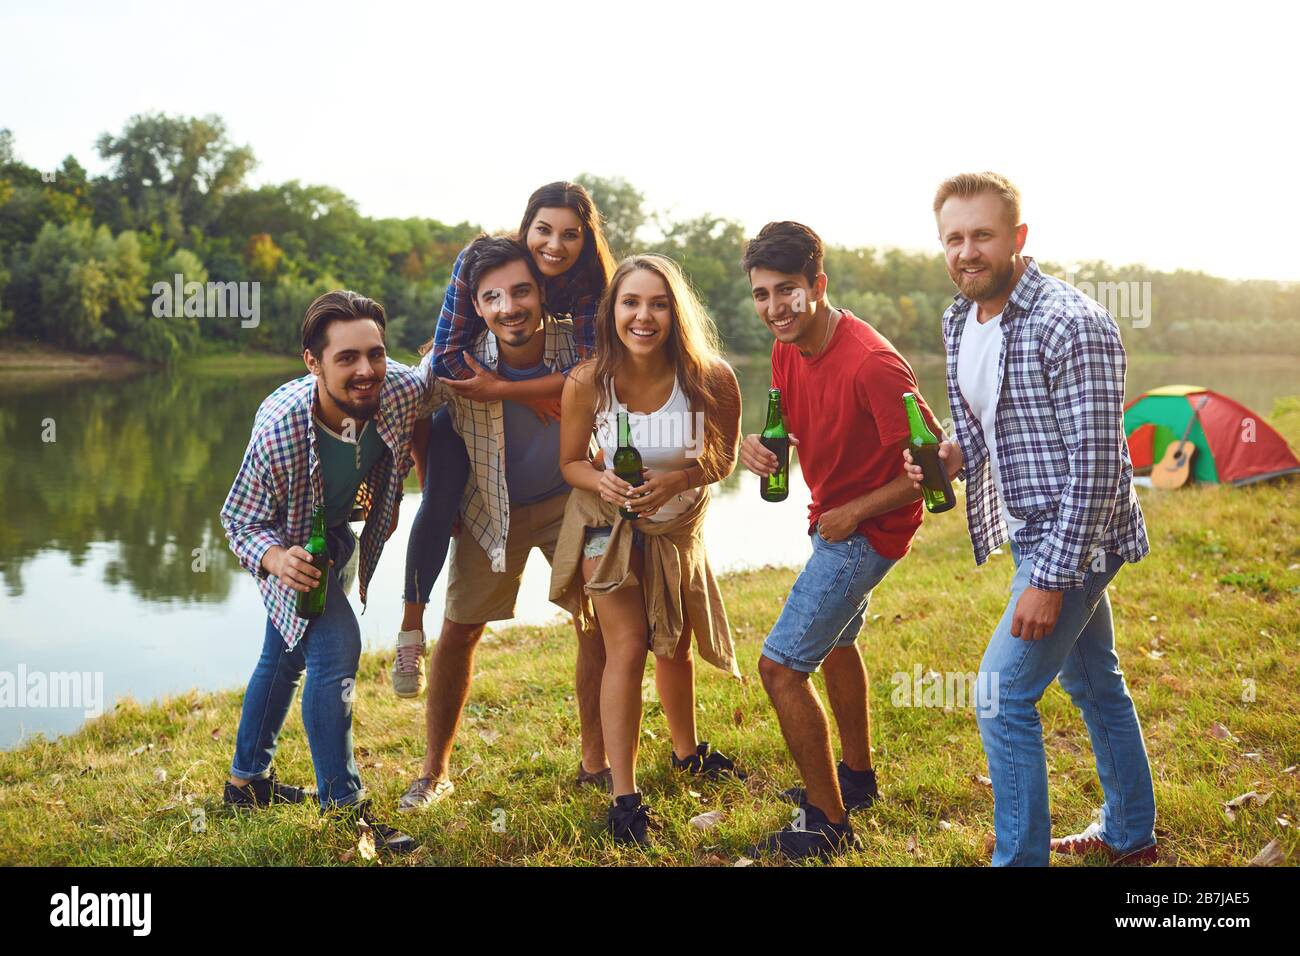 Gruppe lächelnder Menschen, die auf einer Picknickparty stehen Stockfoto